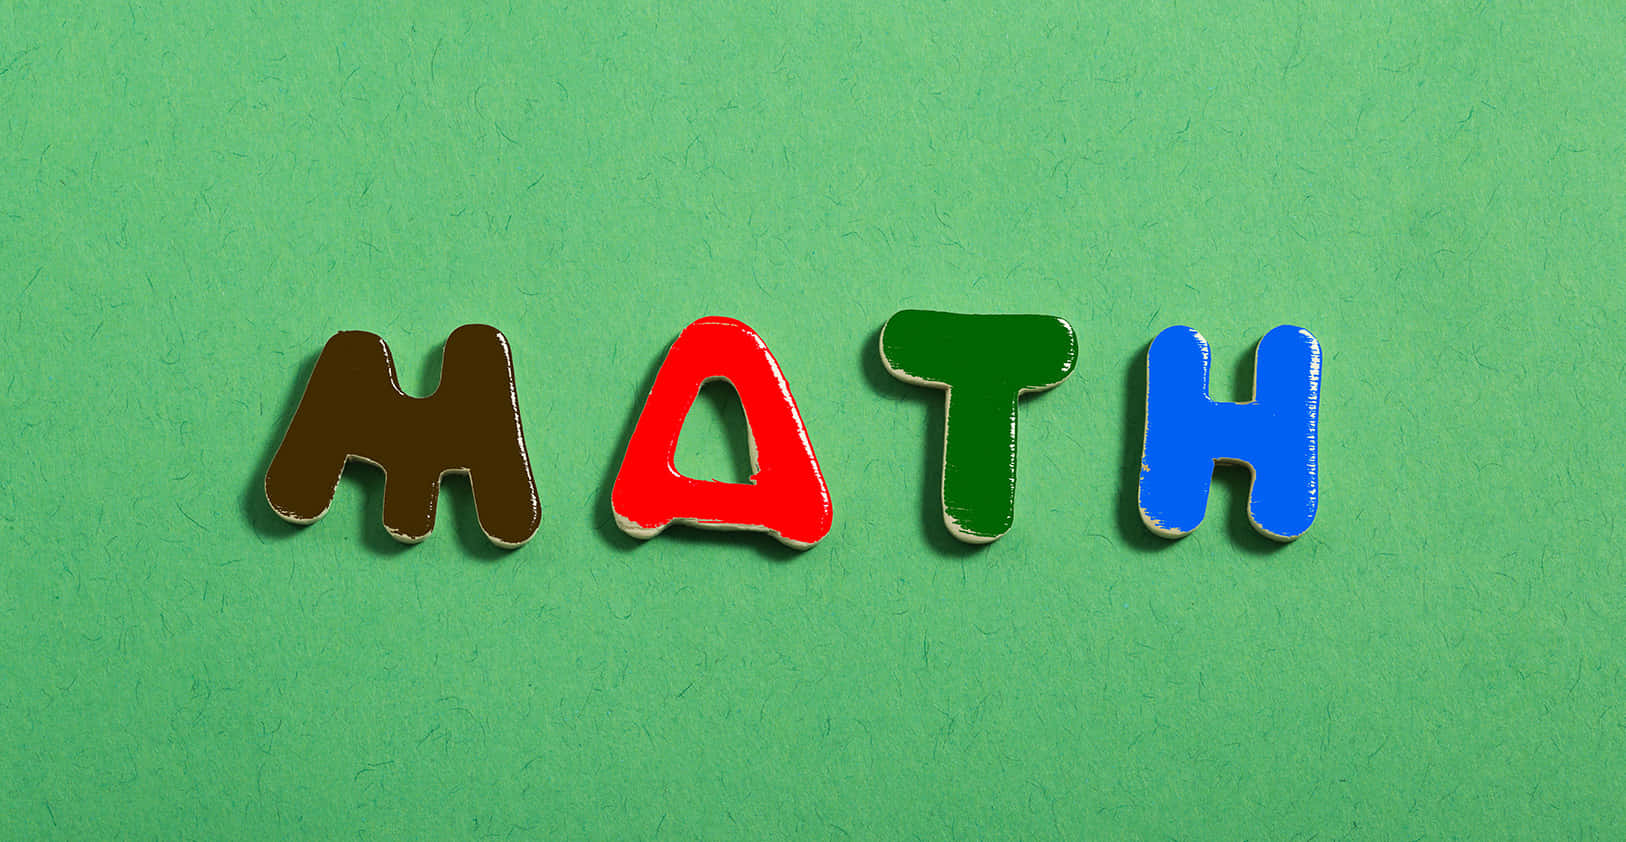 En farverig ord matematik skrevet ud på en grøn baggrund.